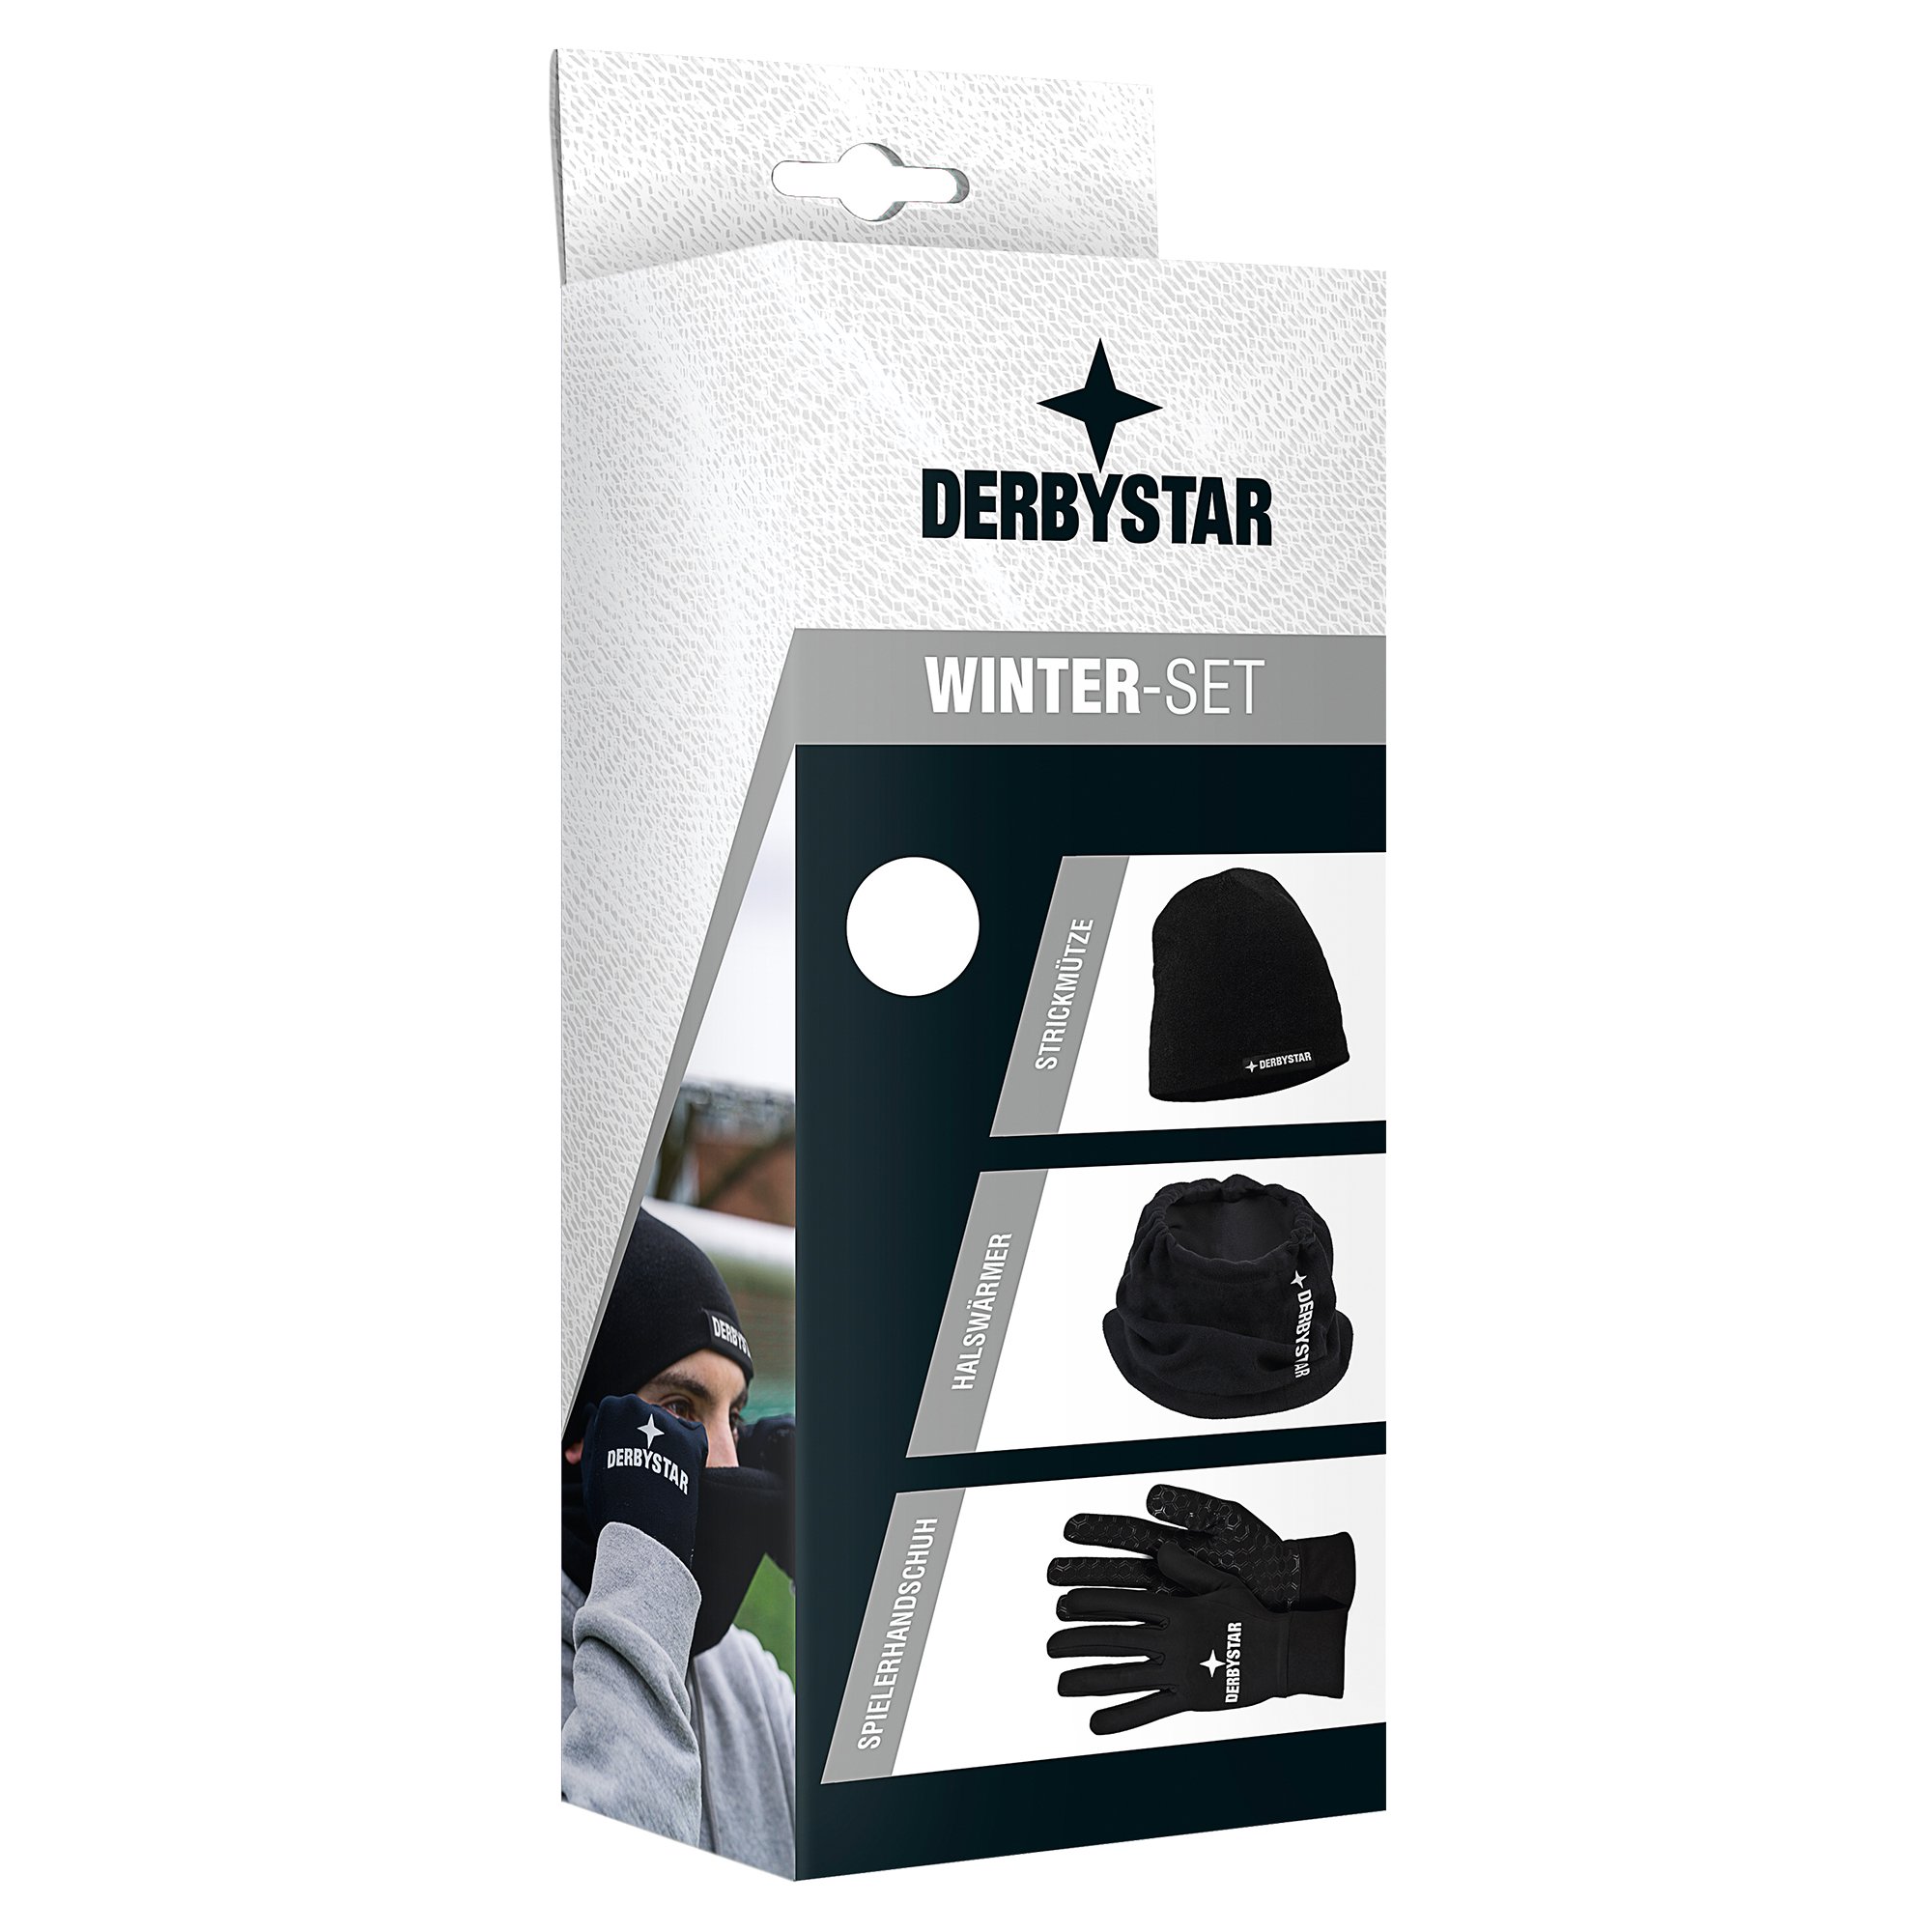 Derbystar Winter-Set v21